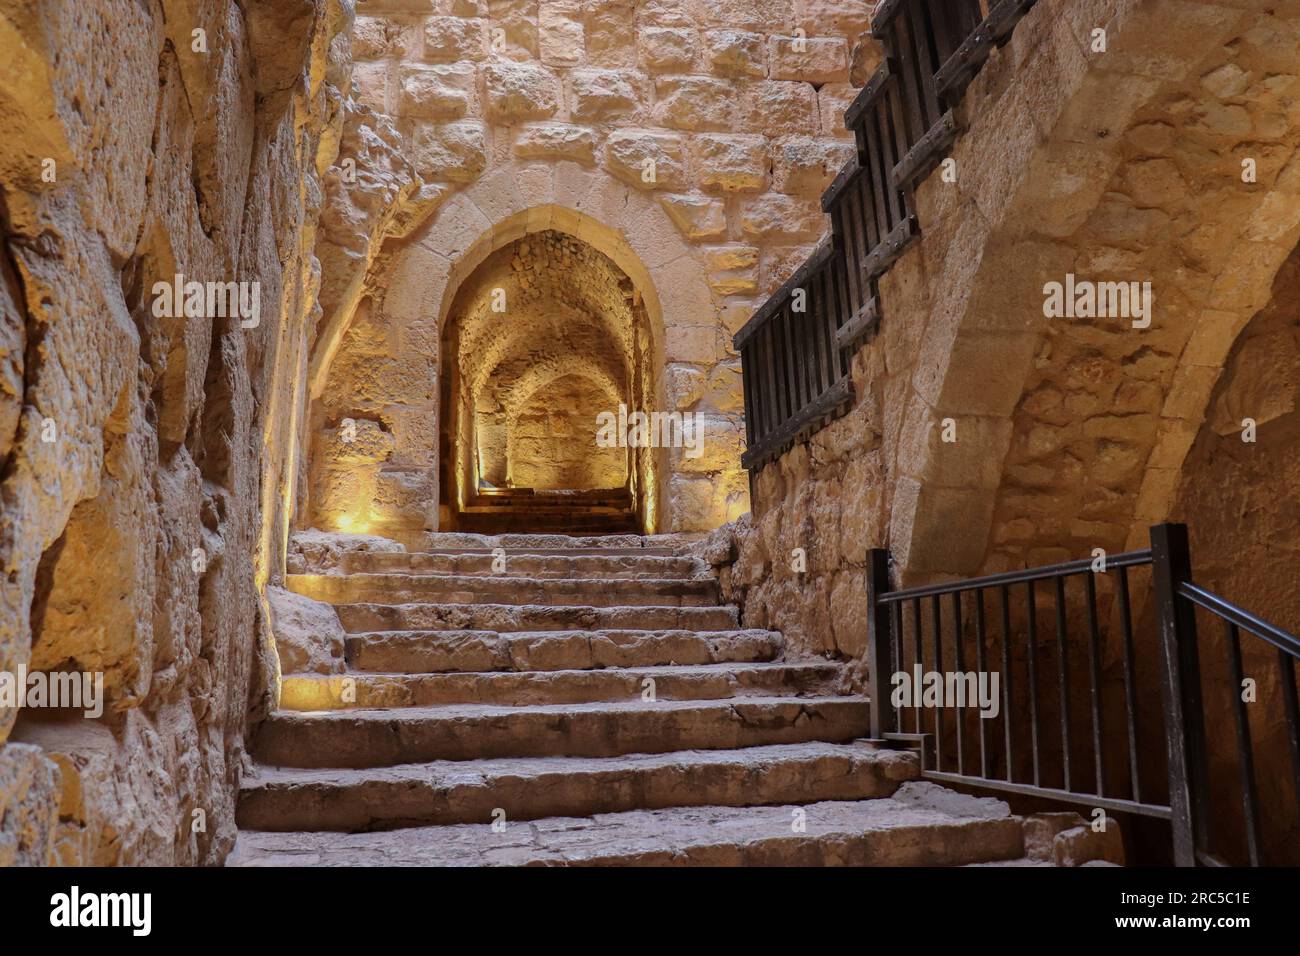 Eine alte historische Burg - Treppen im antiken Schloss Ajloun in Jordanien (islamisch-arabische Geschichte) Militärfort Stockfoto